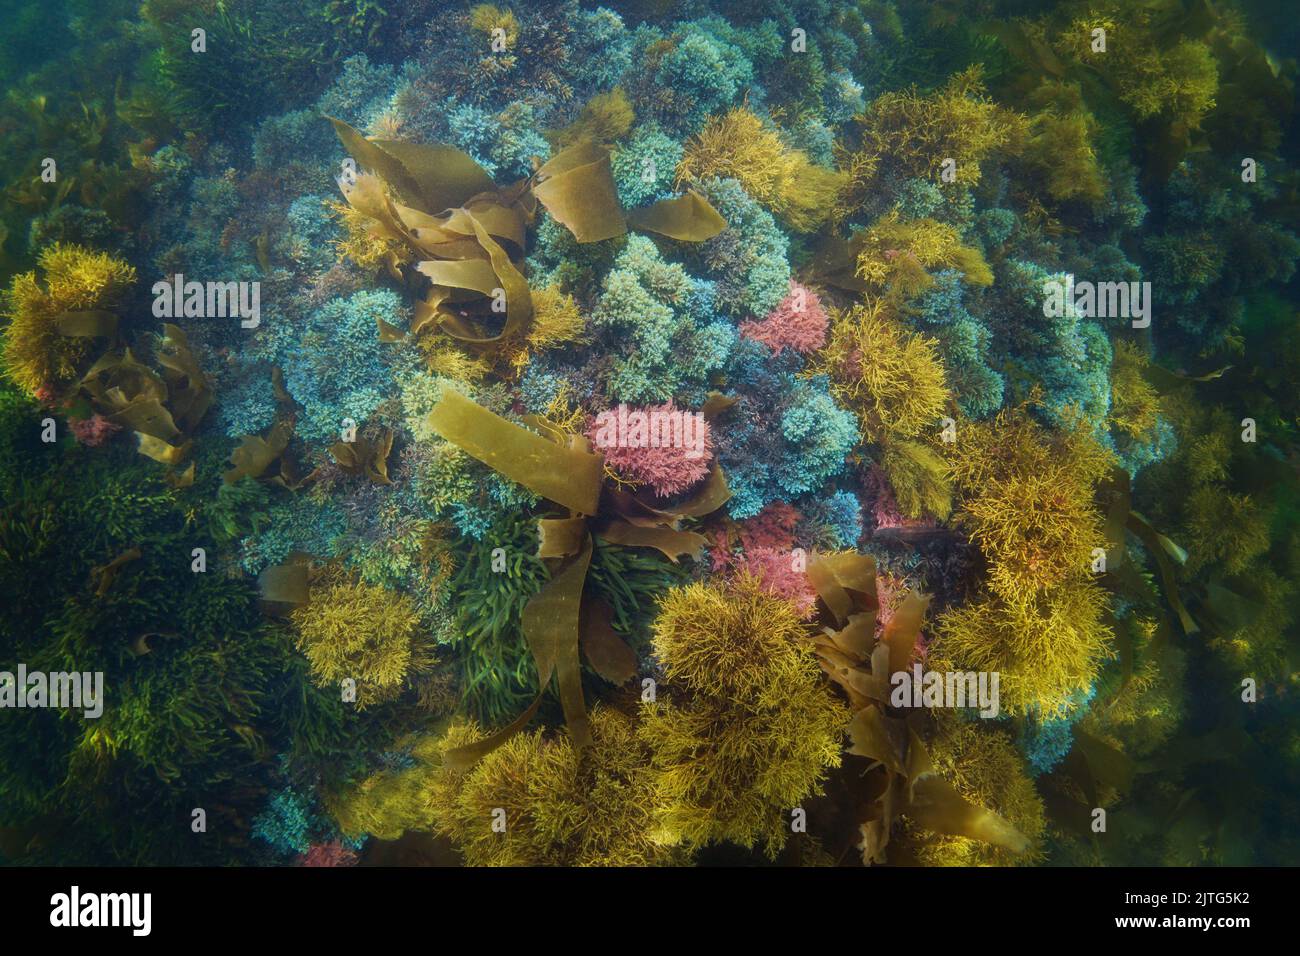 Fondale coperto da varie alghe marine colorate visto dall'alto, scena subacquea naturale, oceano Atlantico, Spagna, Galizia Foto Stock